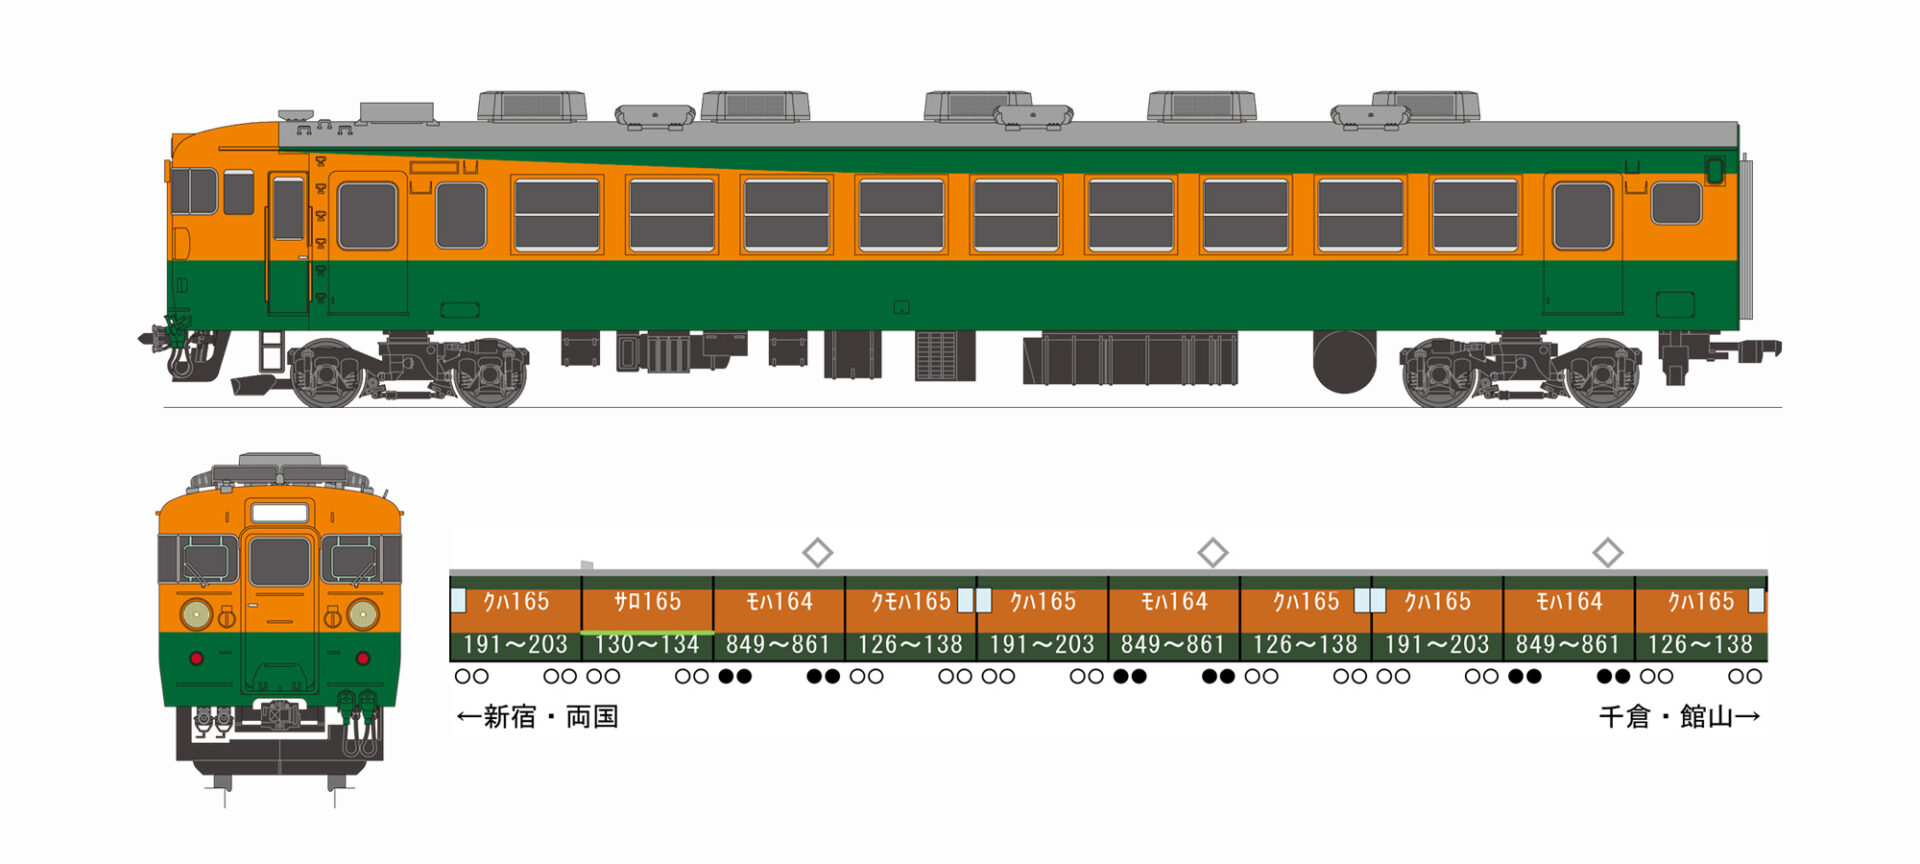 カツミ模型 鉄道模型社 165系電車6輌まとめて - 鉄道模型